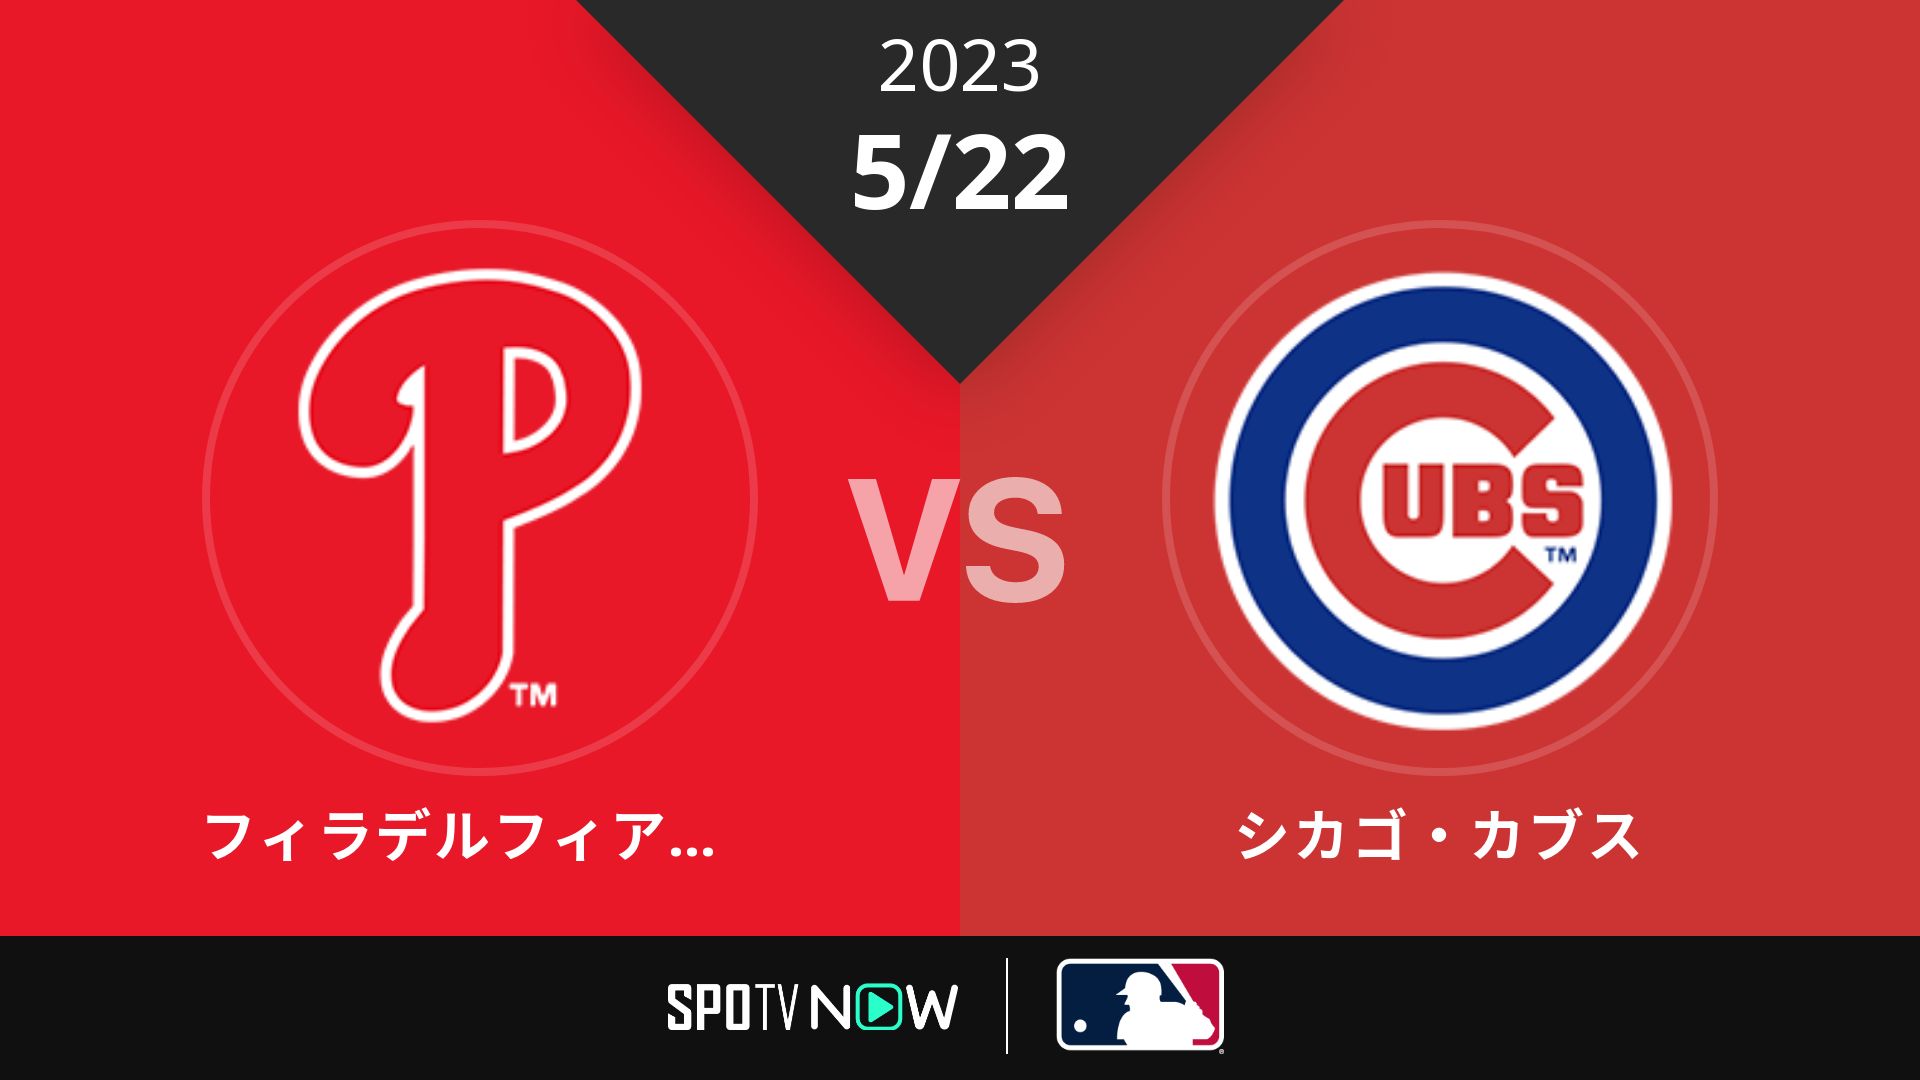 2023/5/22 フィリーズ vs カブス [MLB]